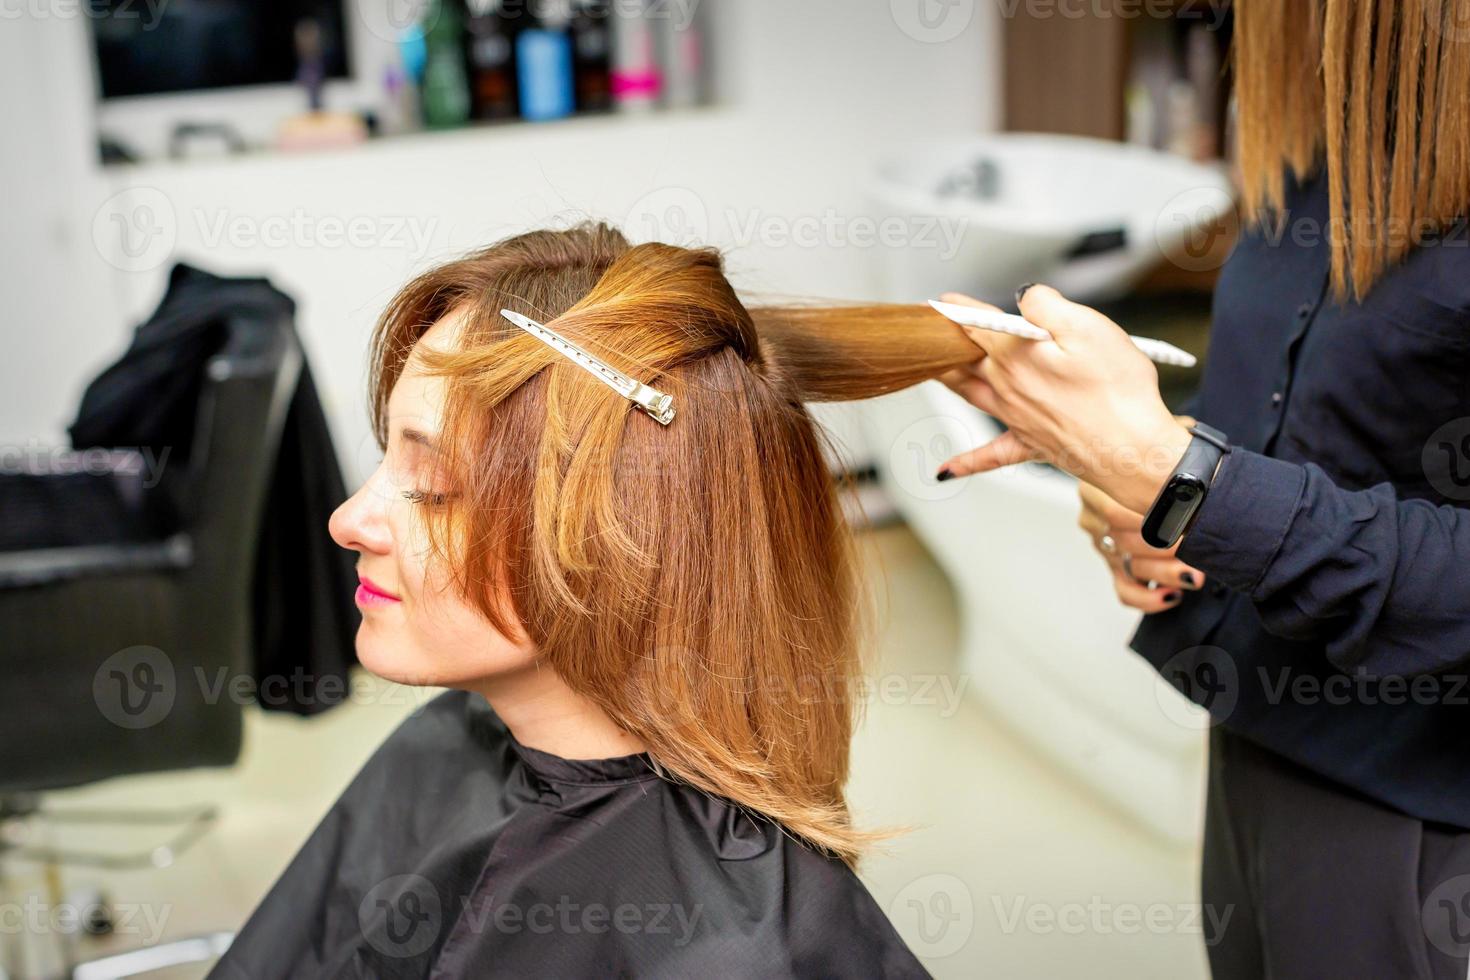 de kvinna klient tar emot en frisyr på de skönhet salong, ung kvinna njuter få en ny frisyr. foto